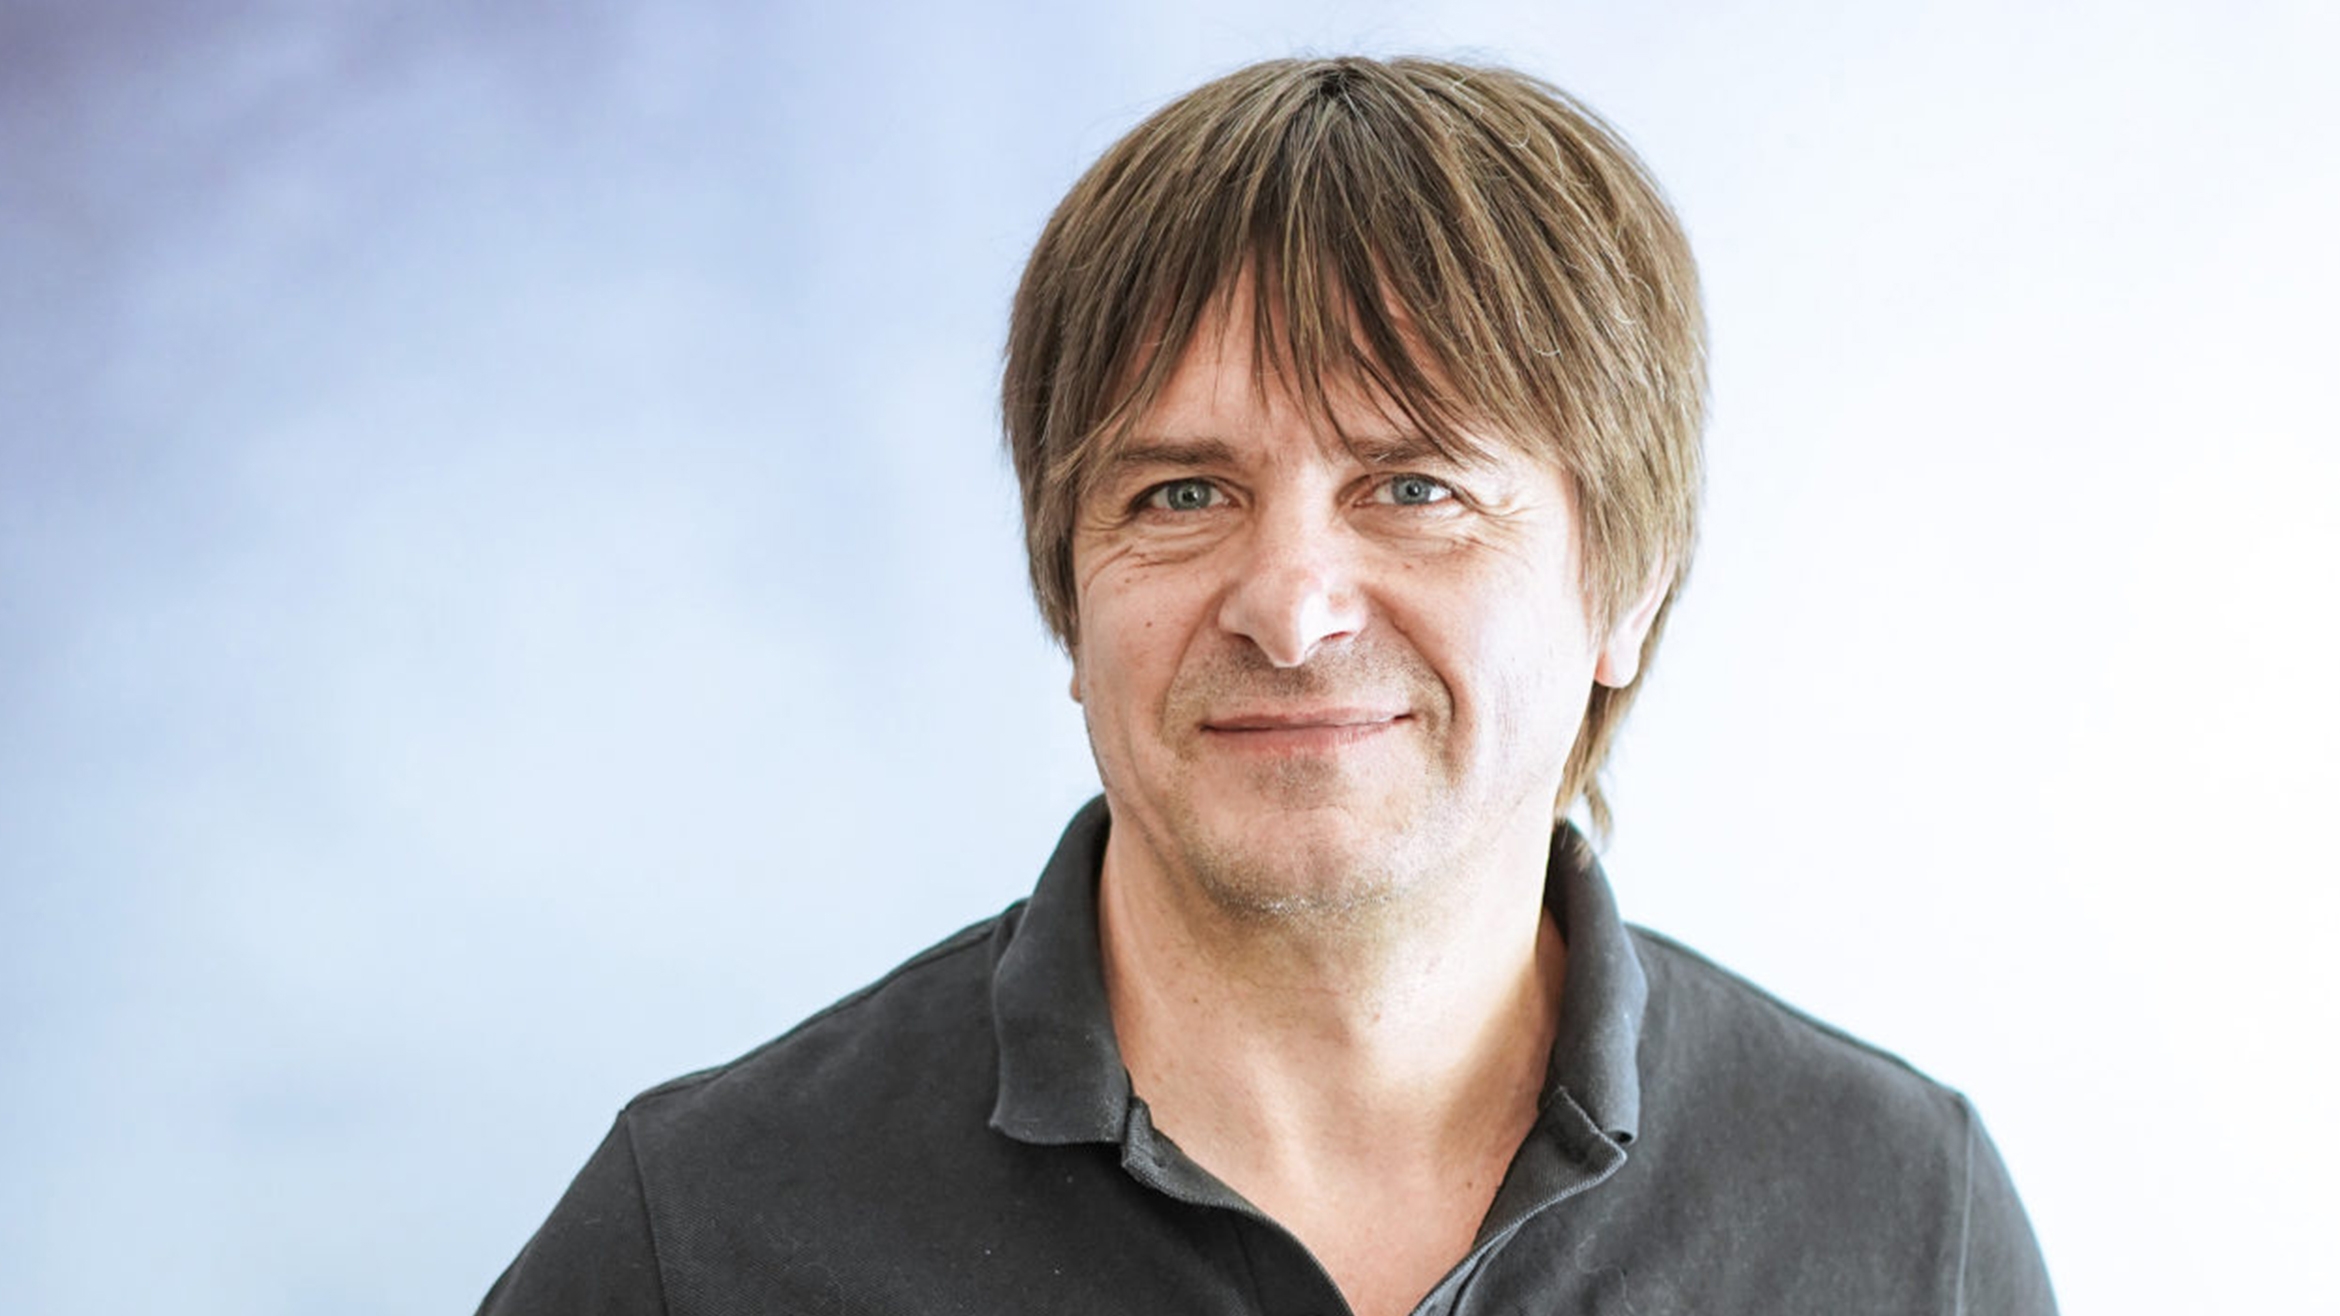 Michael Hesse übernimmt die Leitung des Feuilletons bei der "Frankfurter Rundschau" –